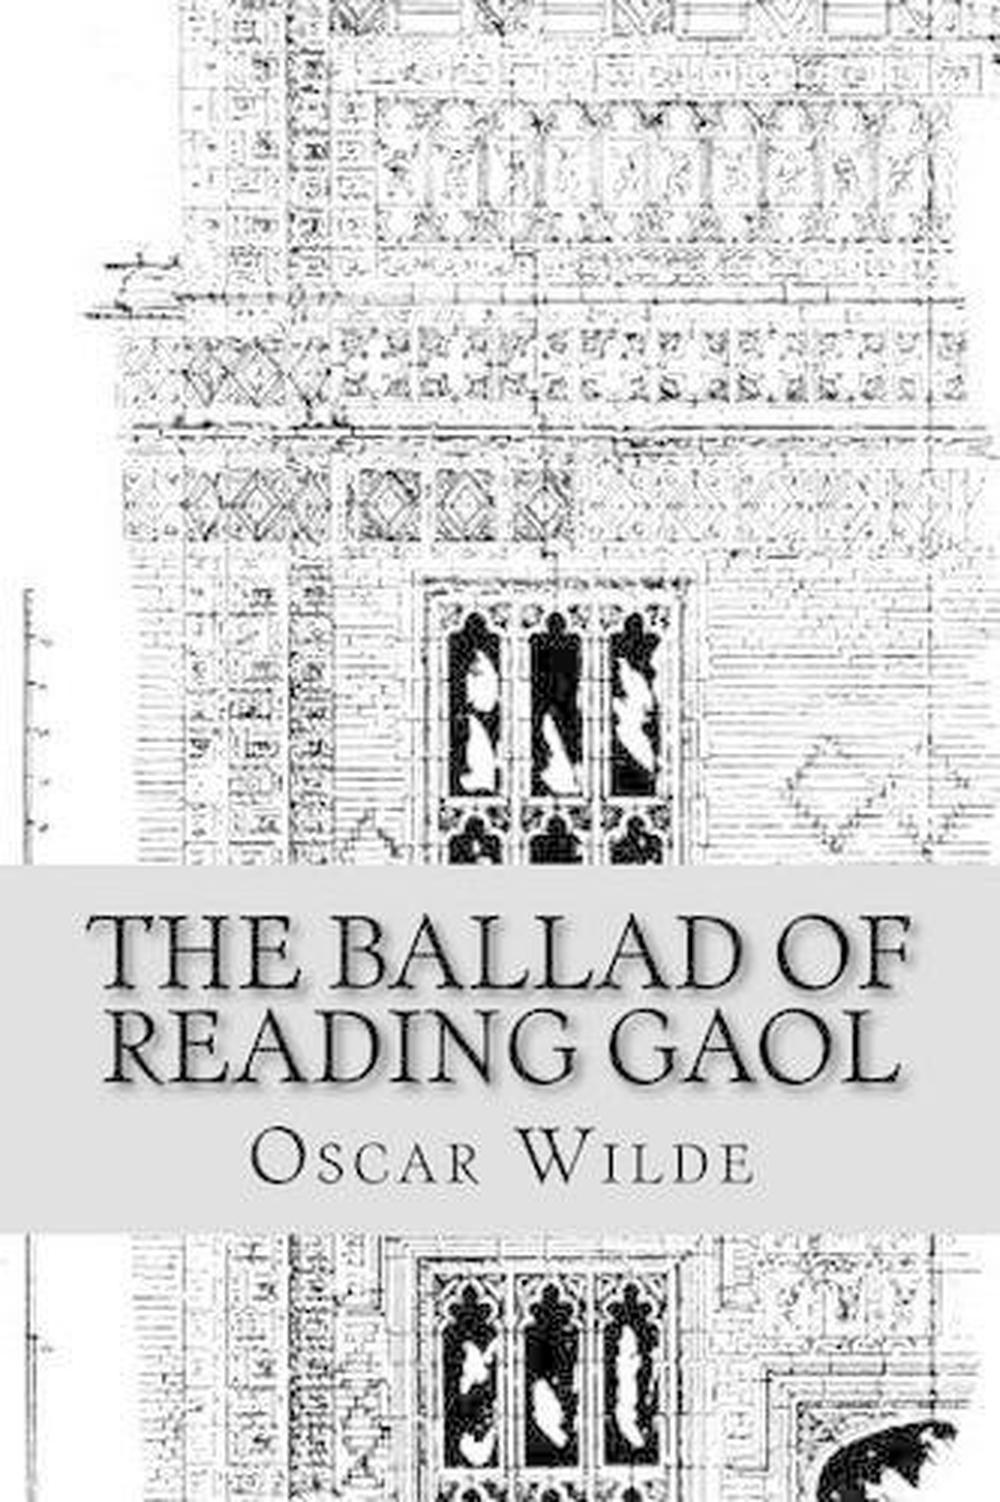 oscar wilde the ballad of